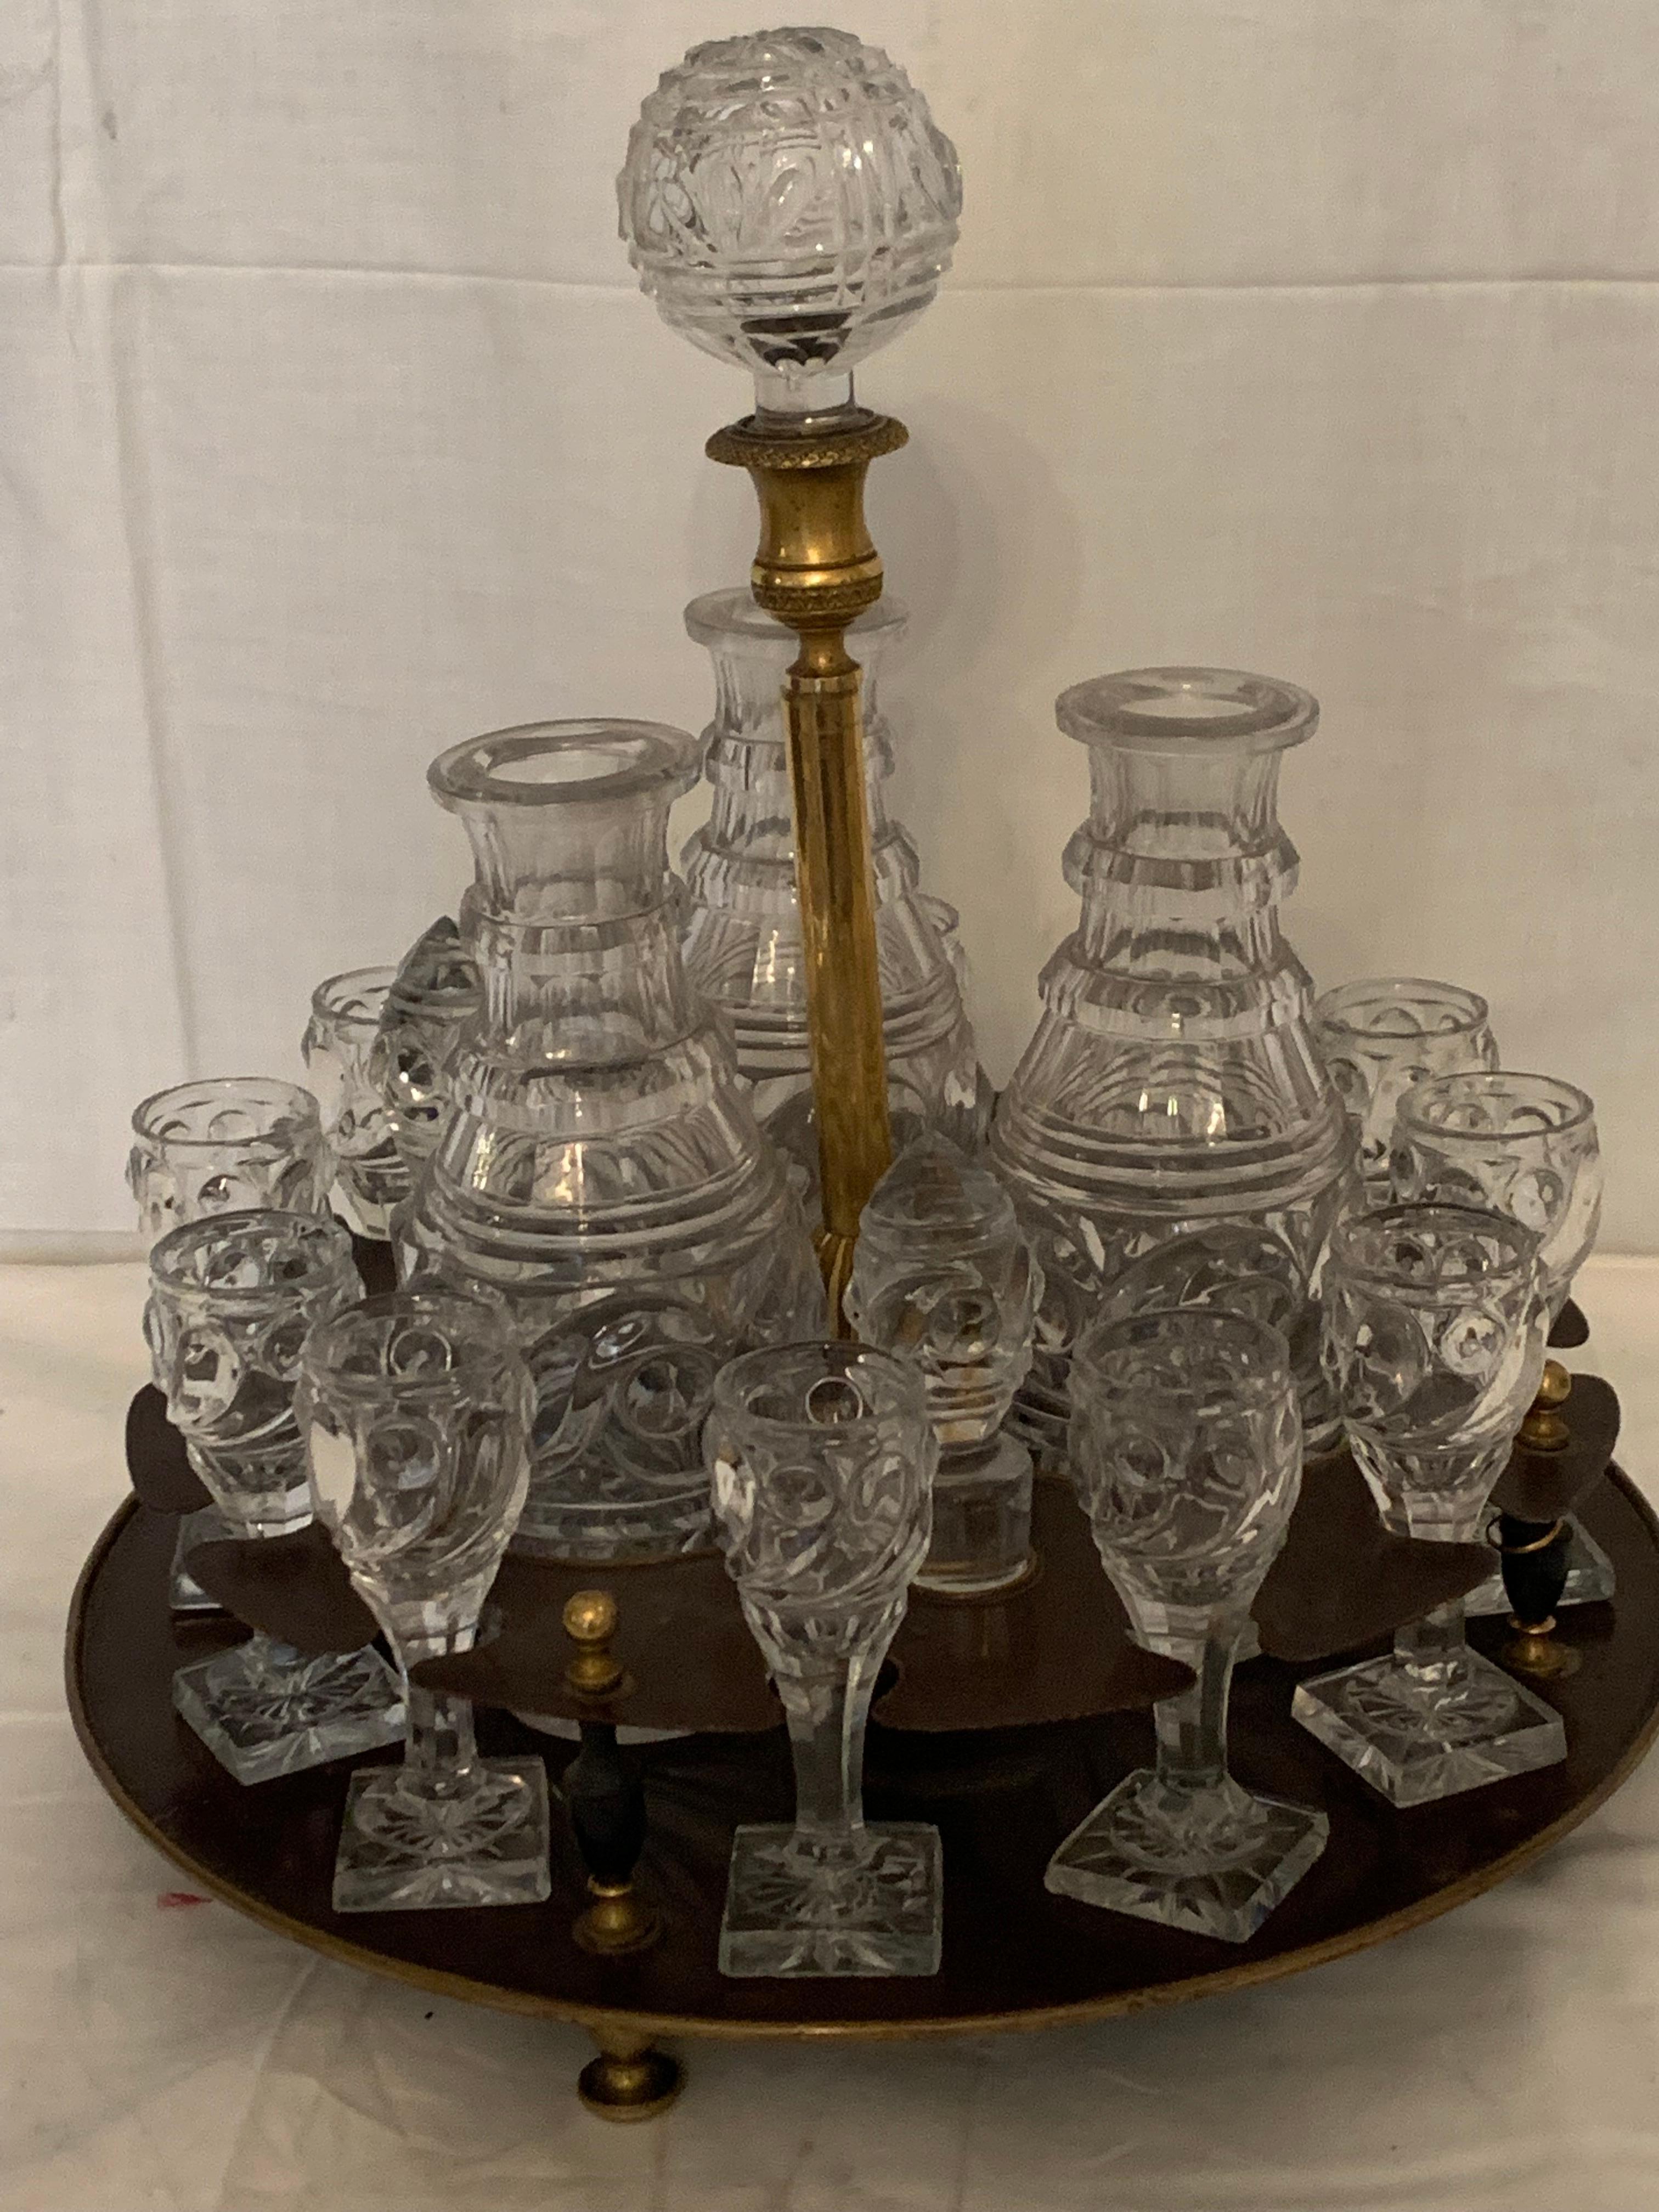 Une armoire à liqueurs en cristal ,bronze style louis XVI .haute qualité de cristal baccarat,en parfait état,inhabituelle par sa forme ,très élégante ,toutes les pièces de cristal sont originales ,vous avez douze verres et trois bouteilles avec le